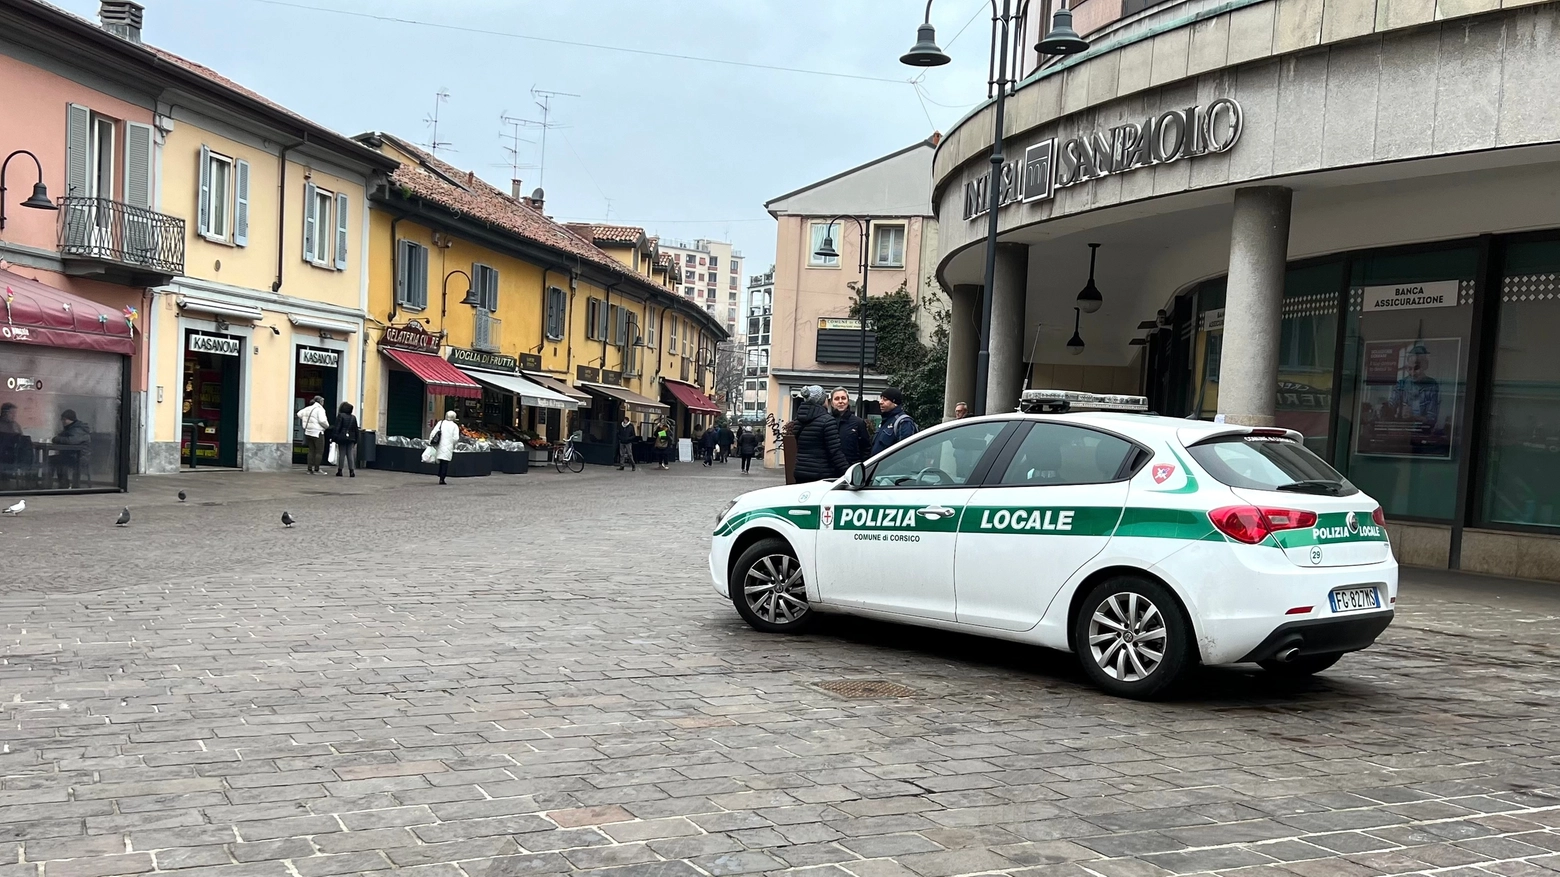 La polizia locale di Corsico in via Cavour